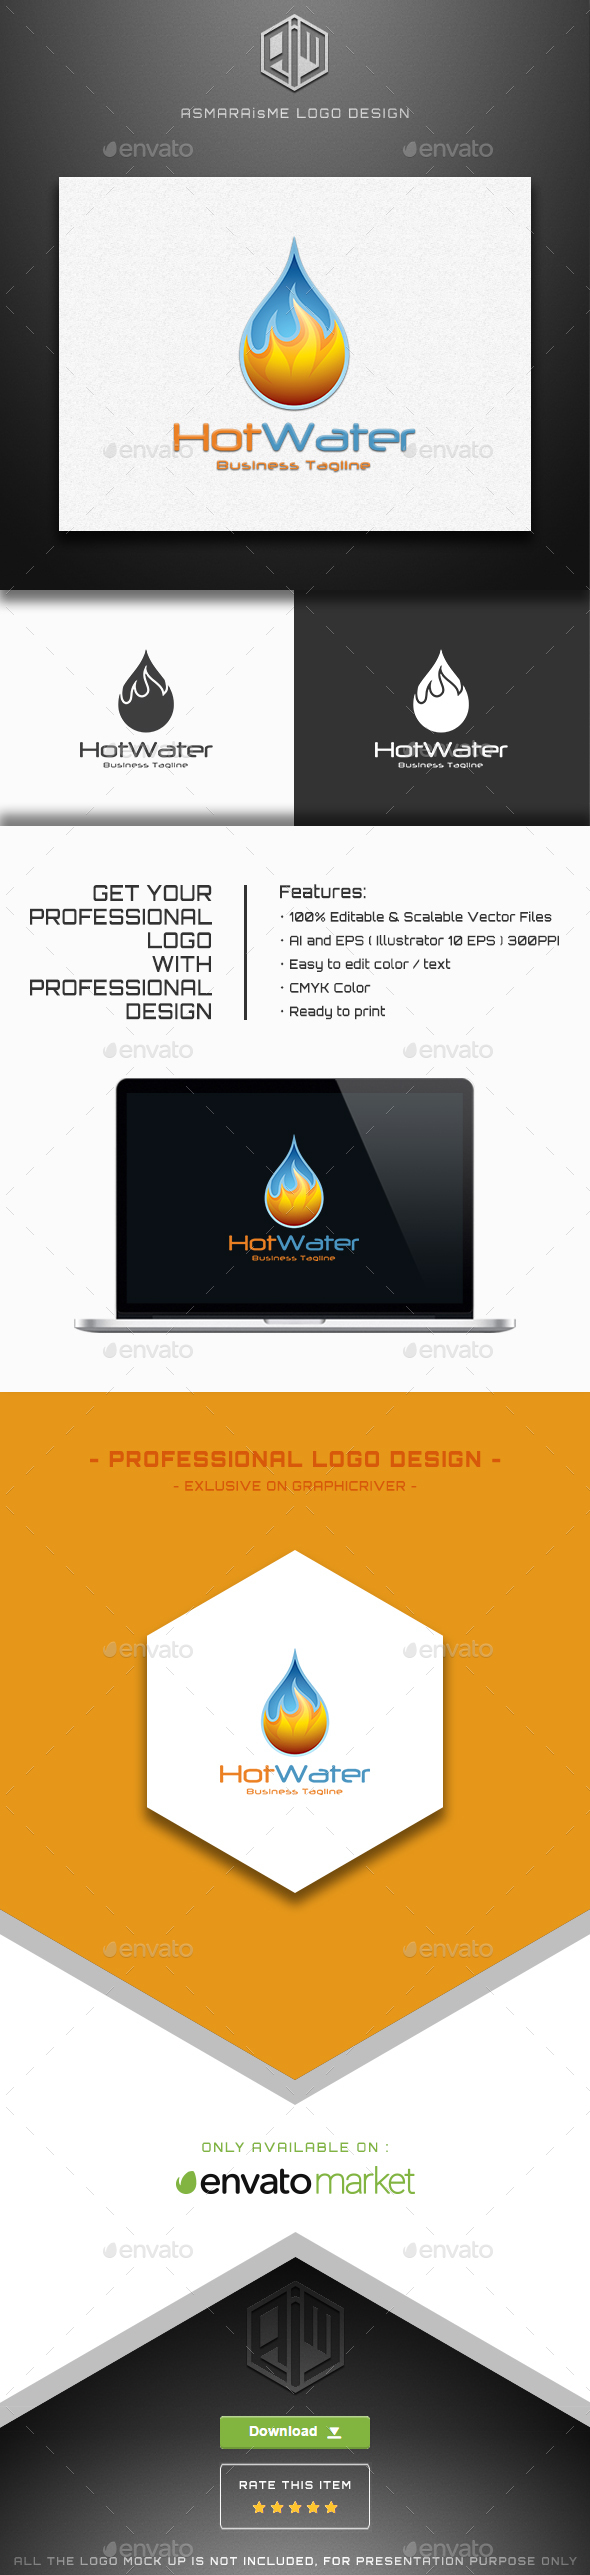 Hot Water - Water Drop Logo